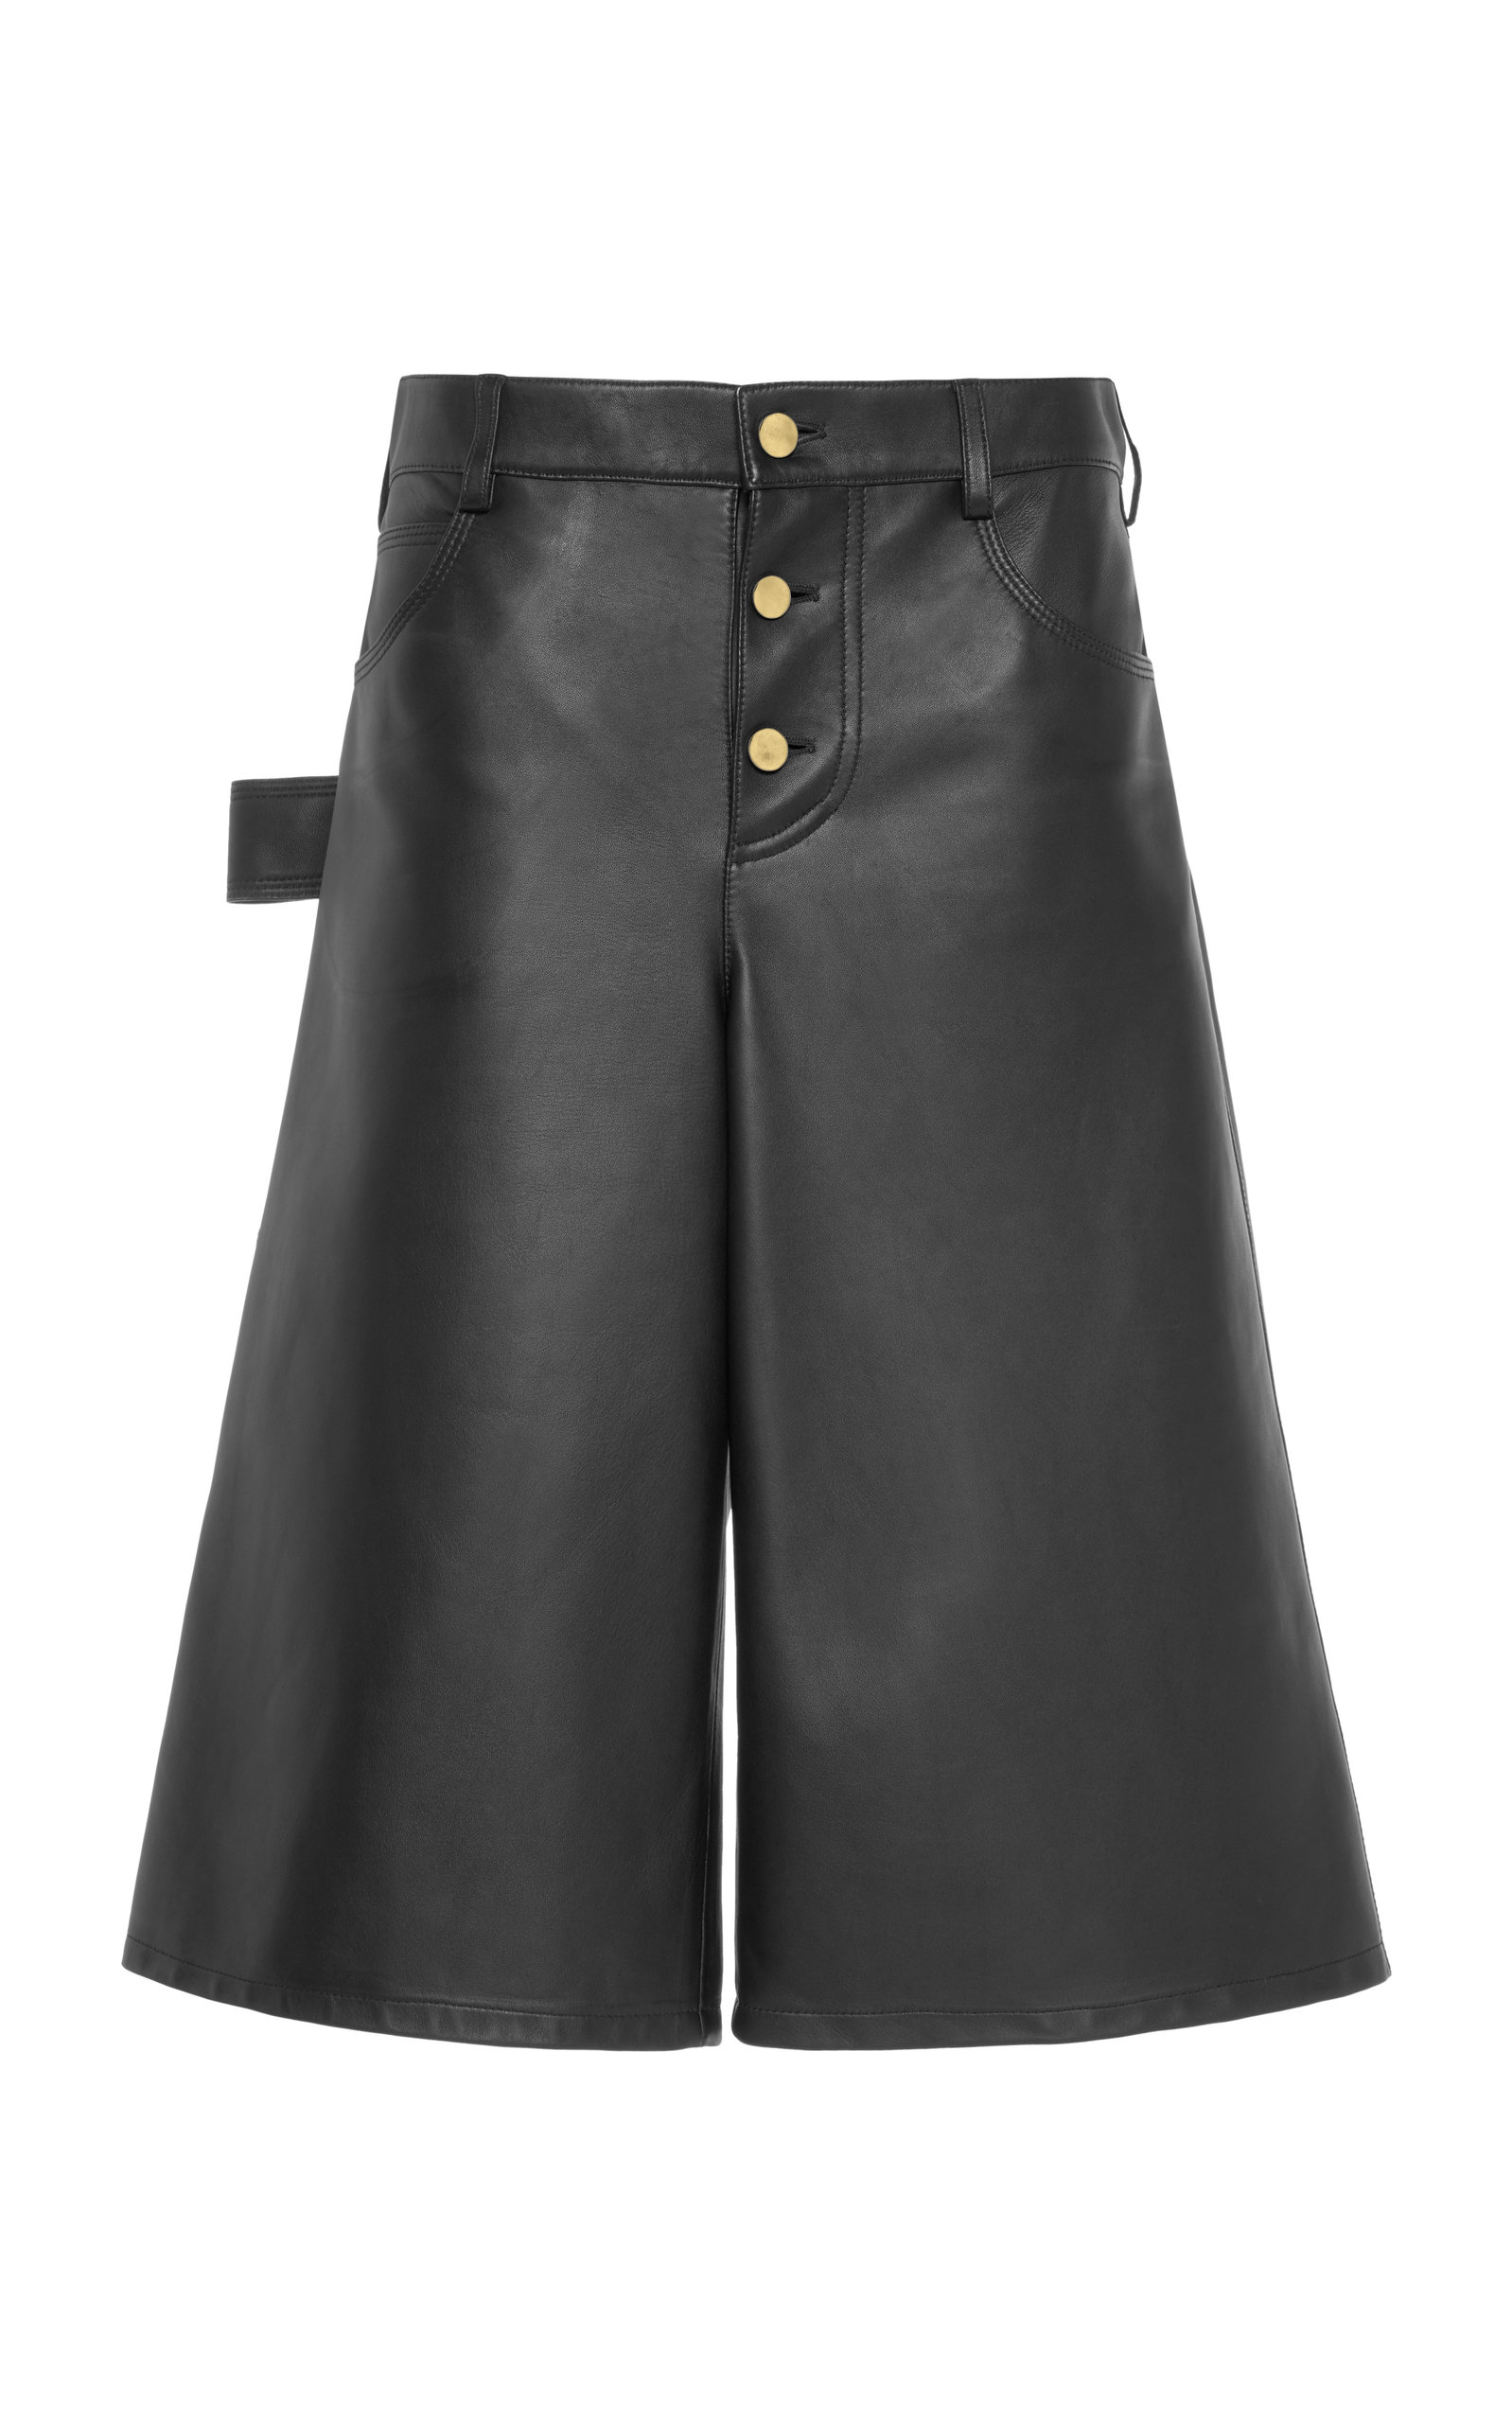 Bottega Veneta Women's Leather Shorts